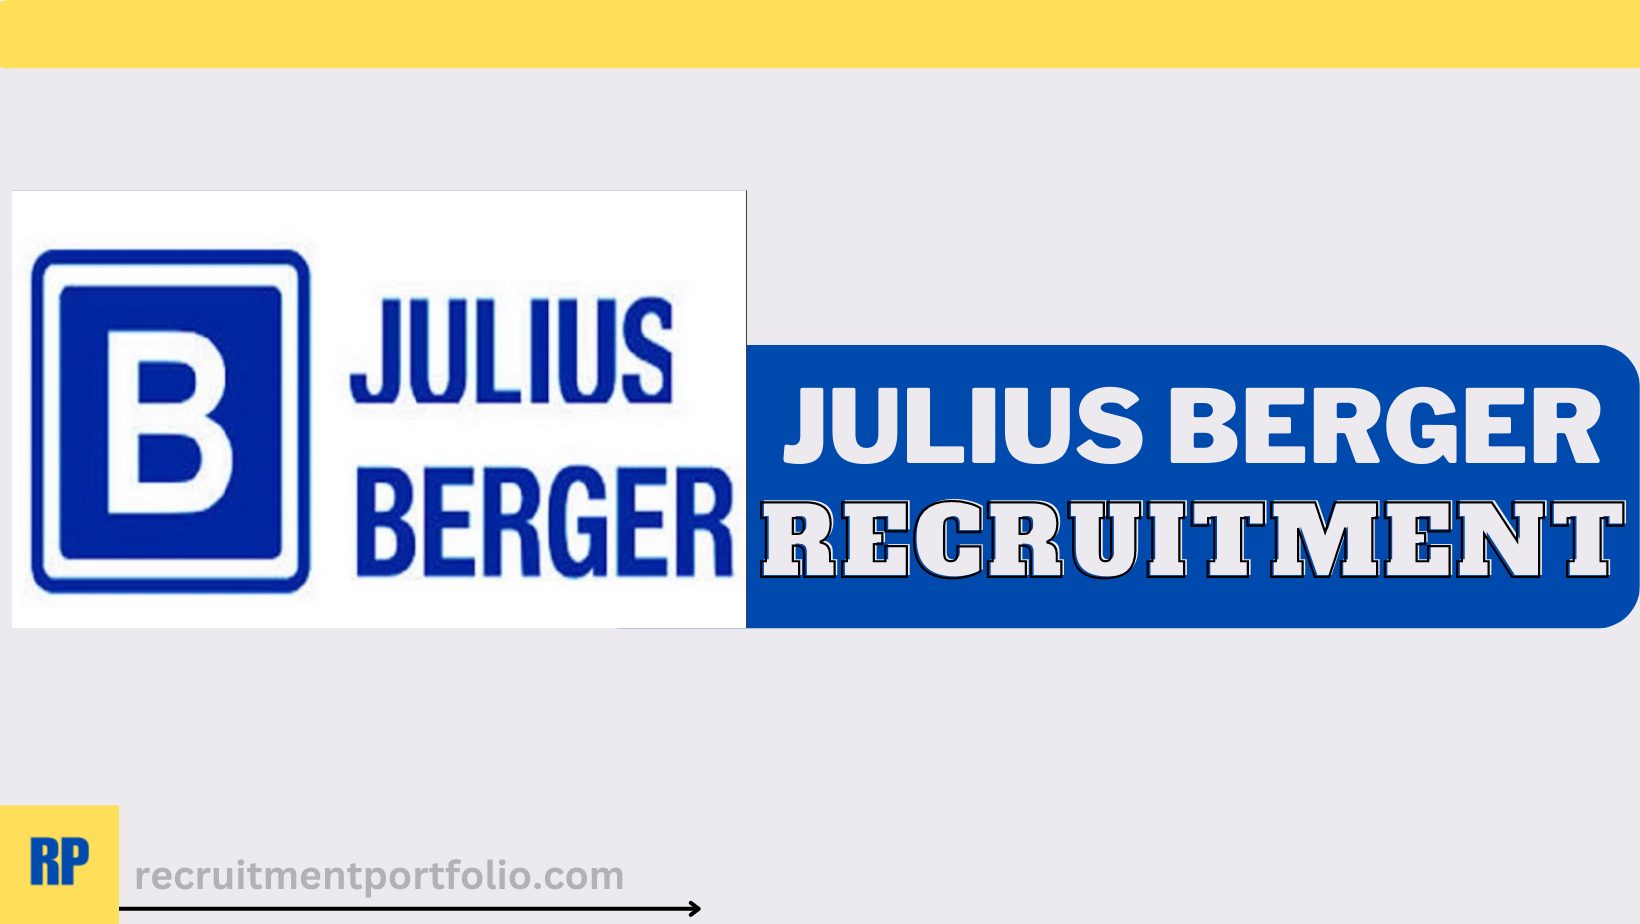 Julius Berger Recruitment